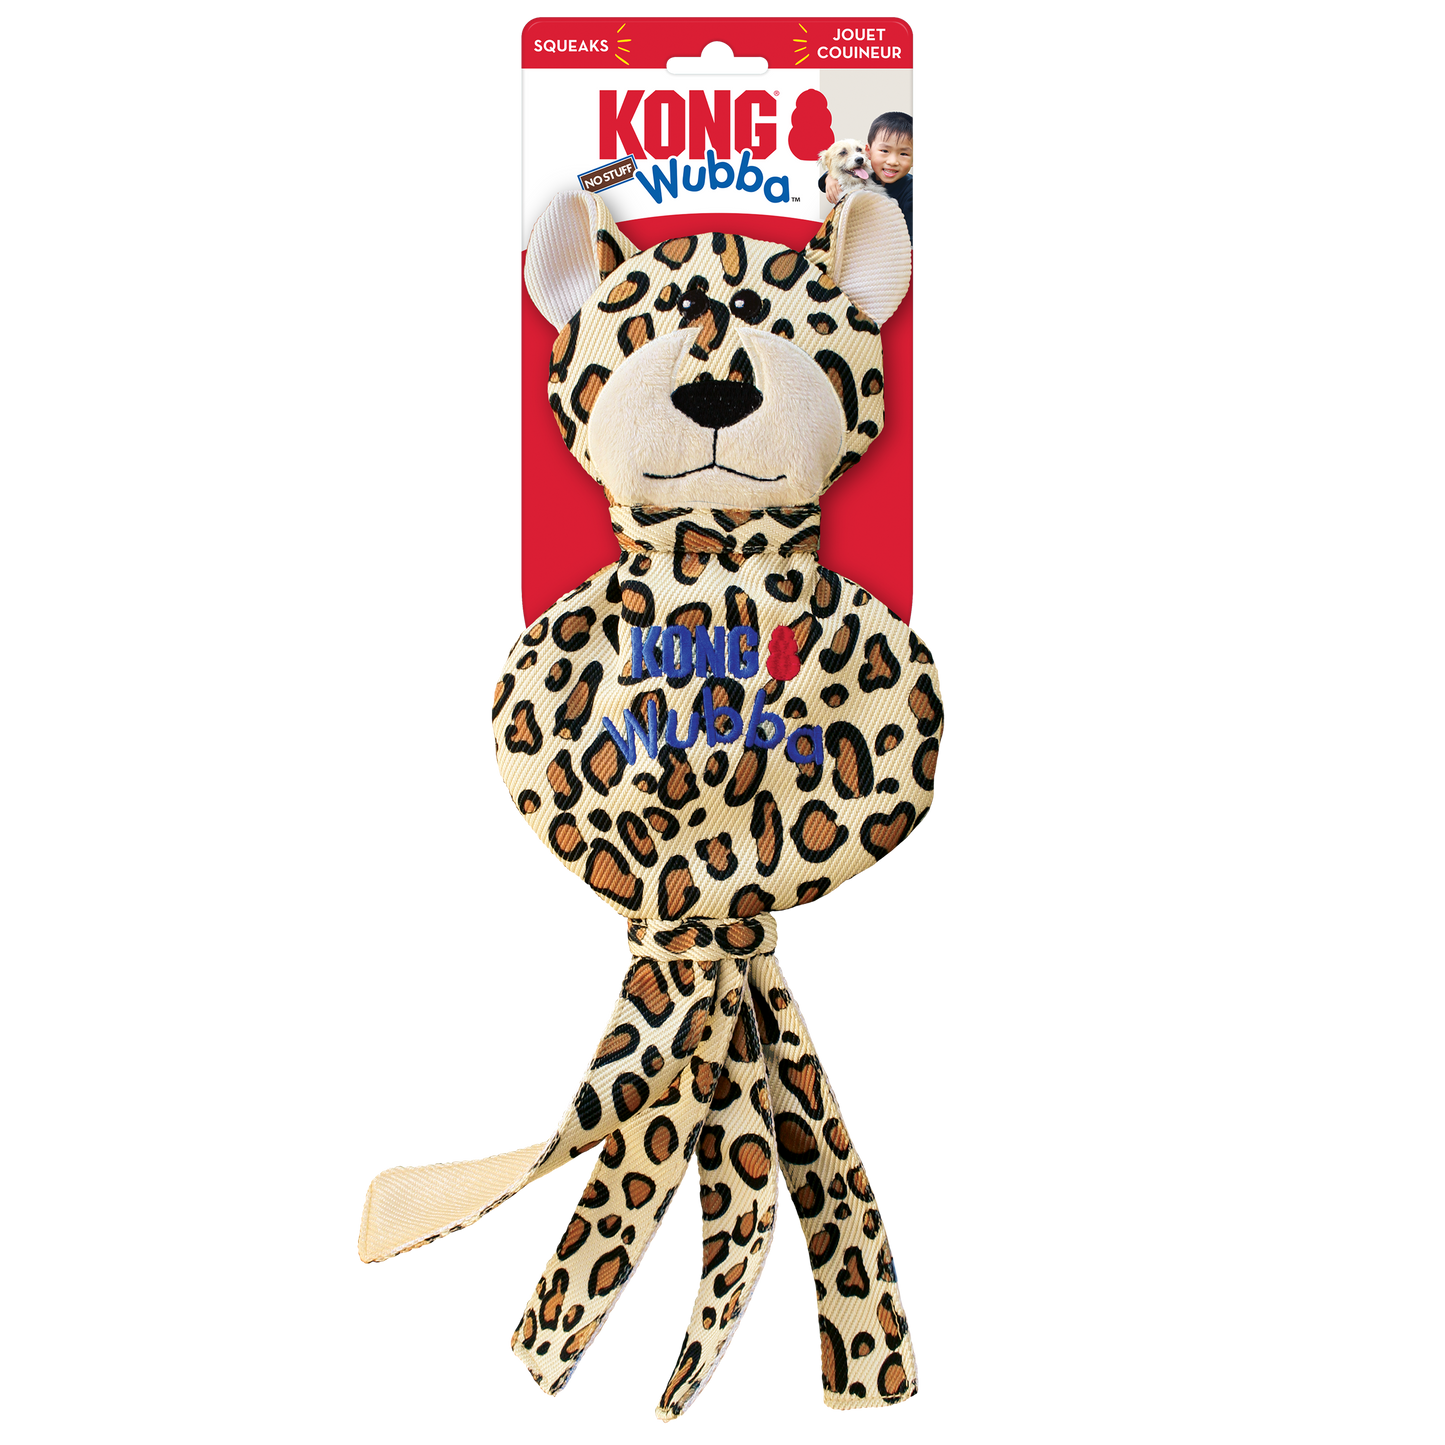 KONG Wubba No-Stuff Cheetah